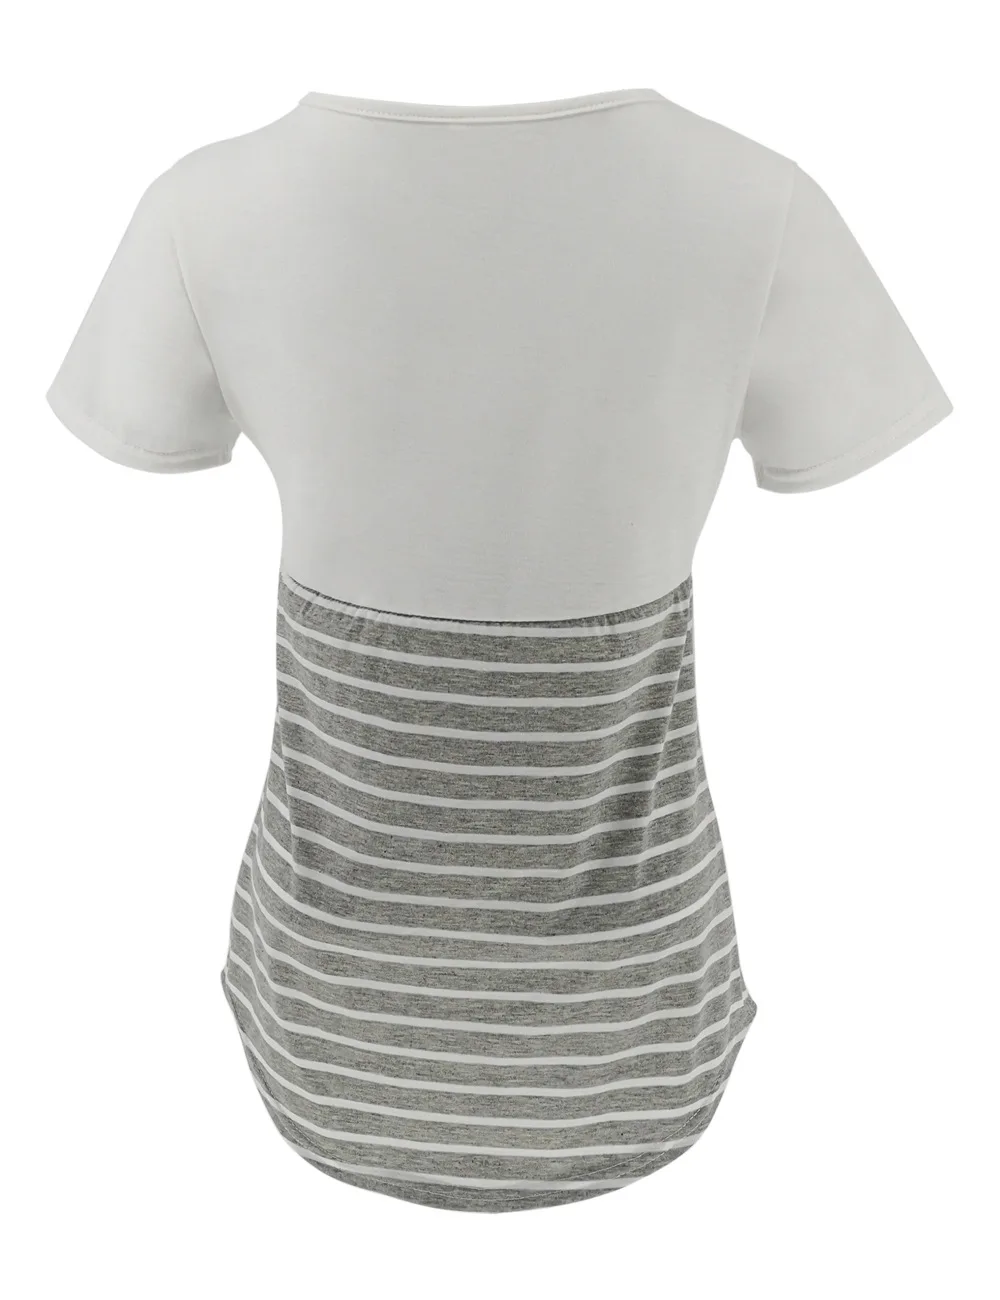 Беременность одежда для кормления топы для беременных Для женщин с коротким рукавом кормящих блузка для кормления грудью футболка мульти-стиль